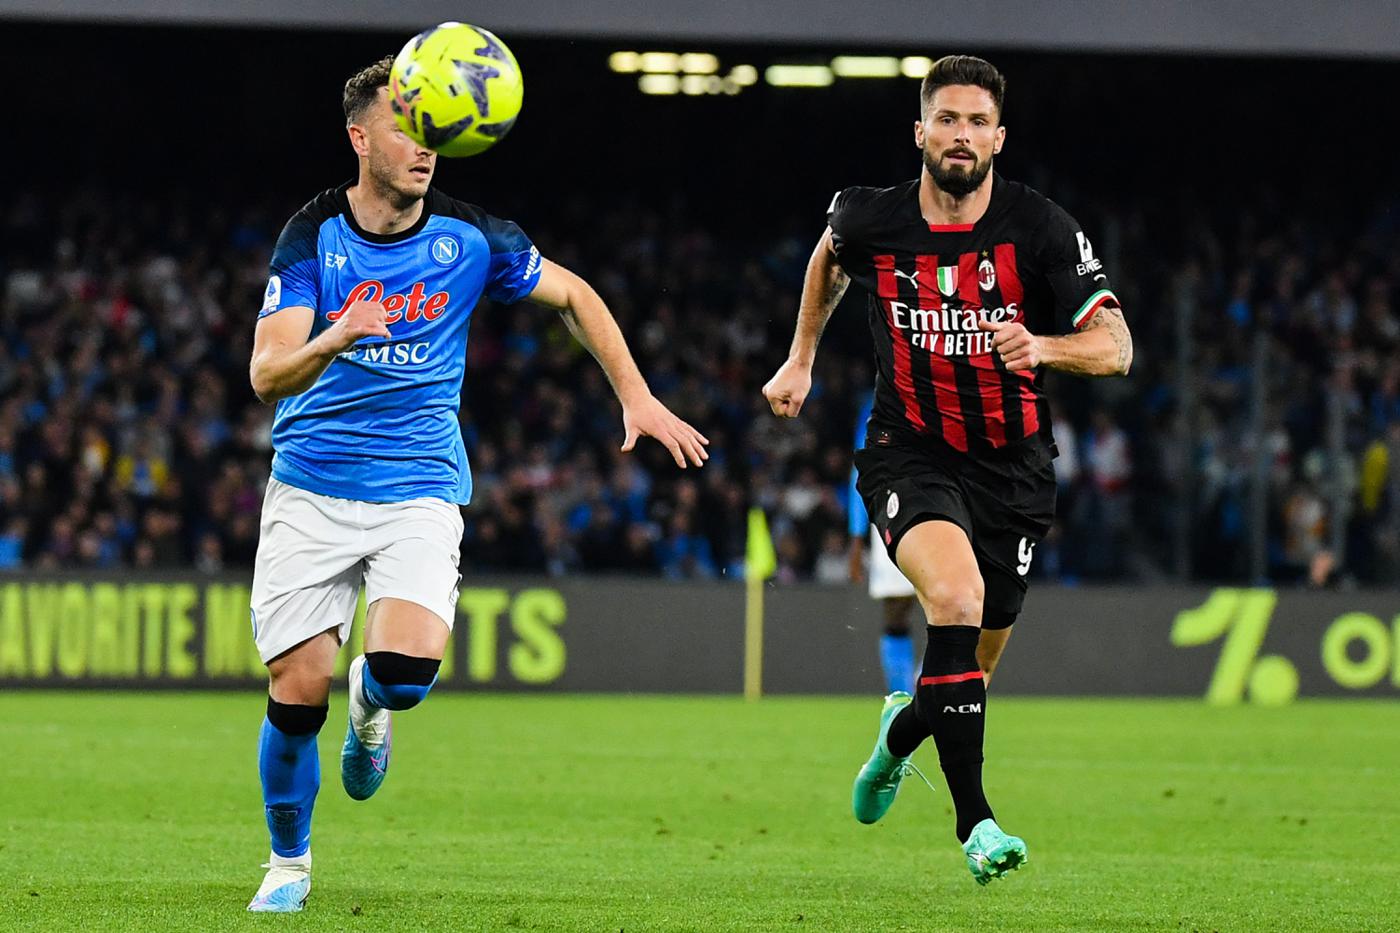 Neapel - Mailand - 0:4. Italienische Meisterschaft, 28. Runde. Spielbericht, Statistiken